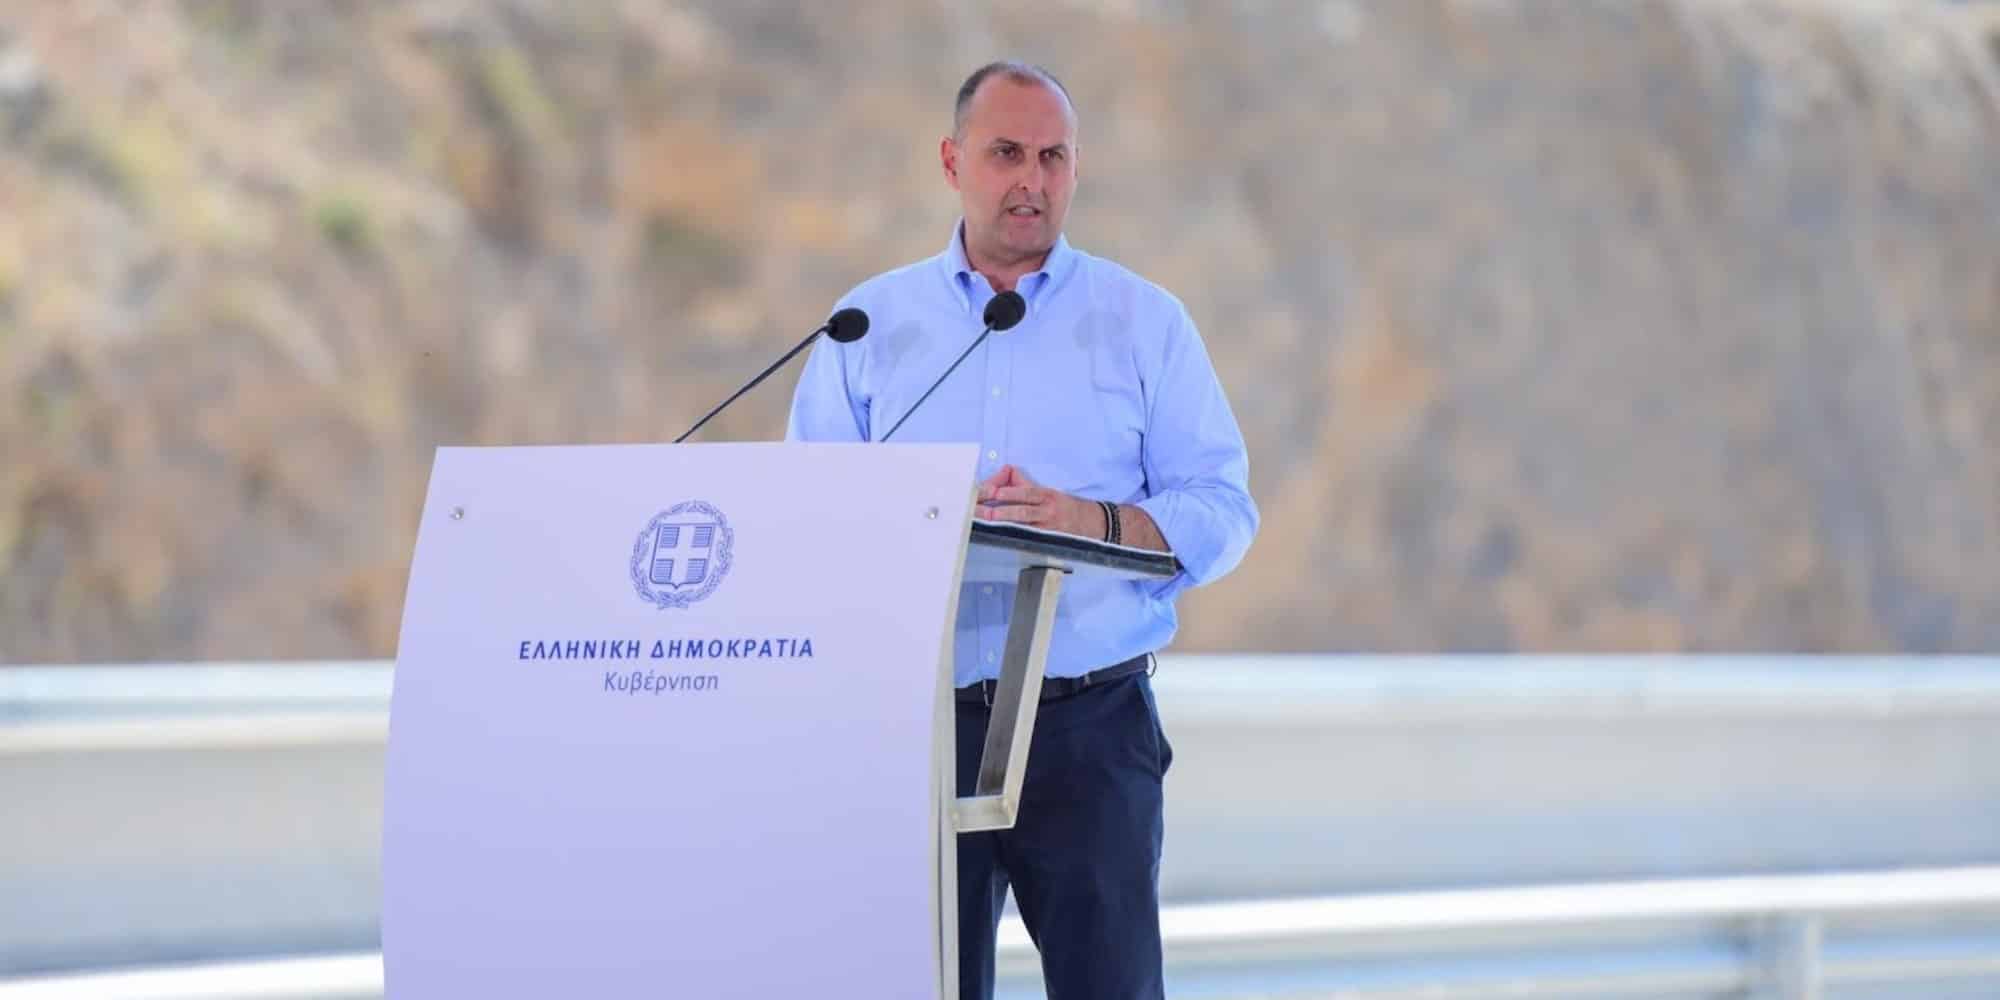 Ο Υφυπουργός Υποδομών και Μεταφορών, αρμόδιος για τις υποδομές, Γιώργος Καραγιάννης